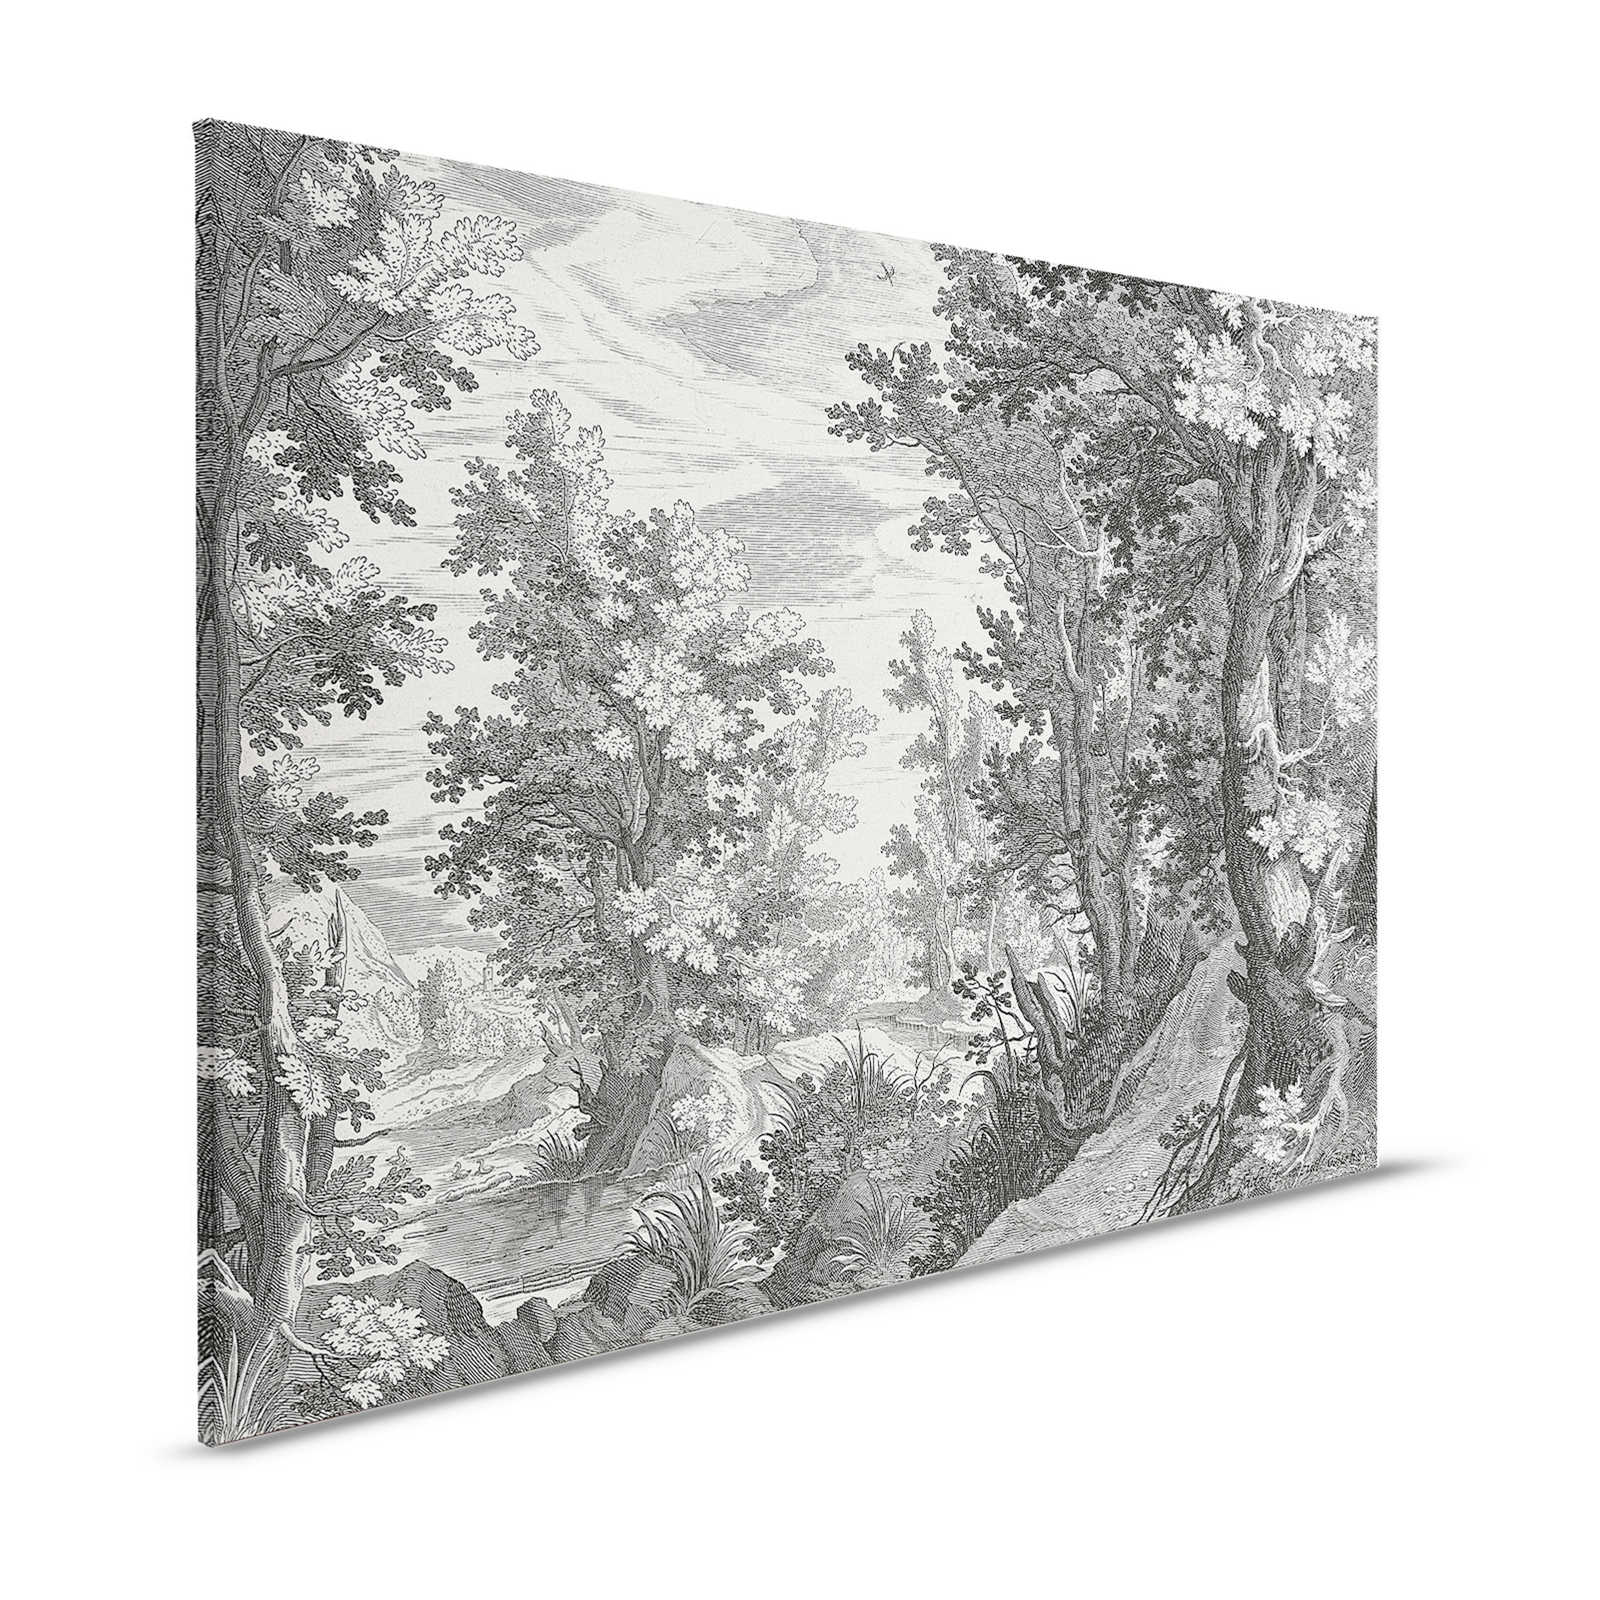         Fancy Forest 3 - Leinwandbild Landschaft Kupferstich Schwarz-Weiß – 1,20 m x 0,80 m
    